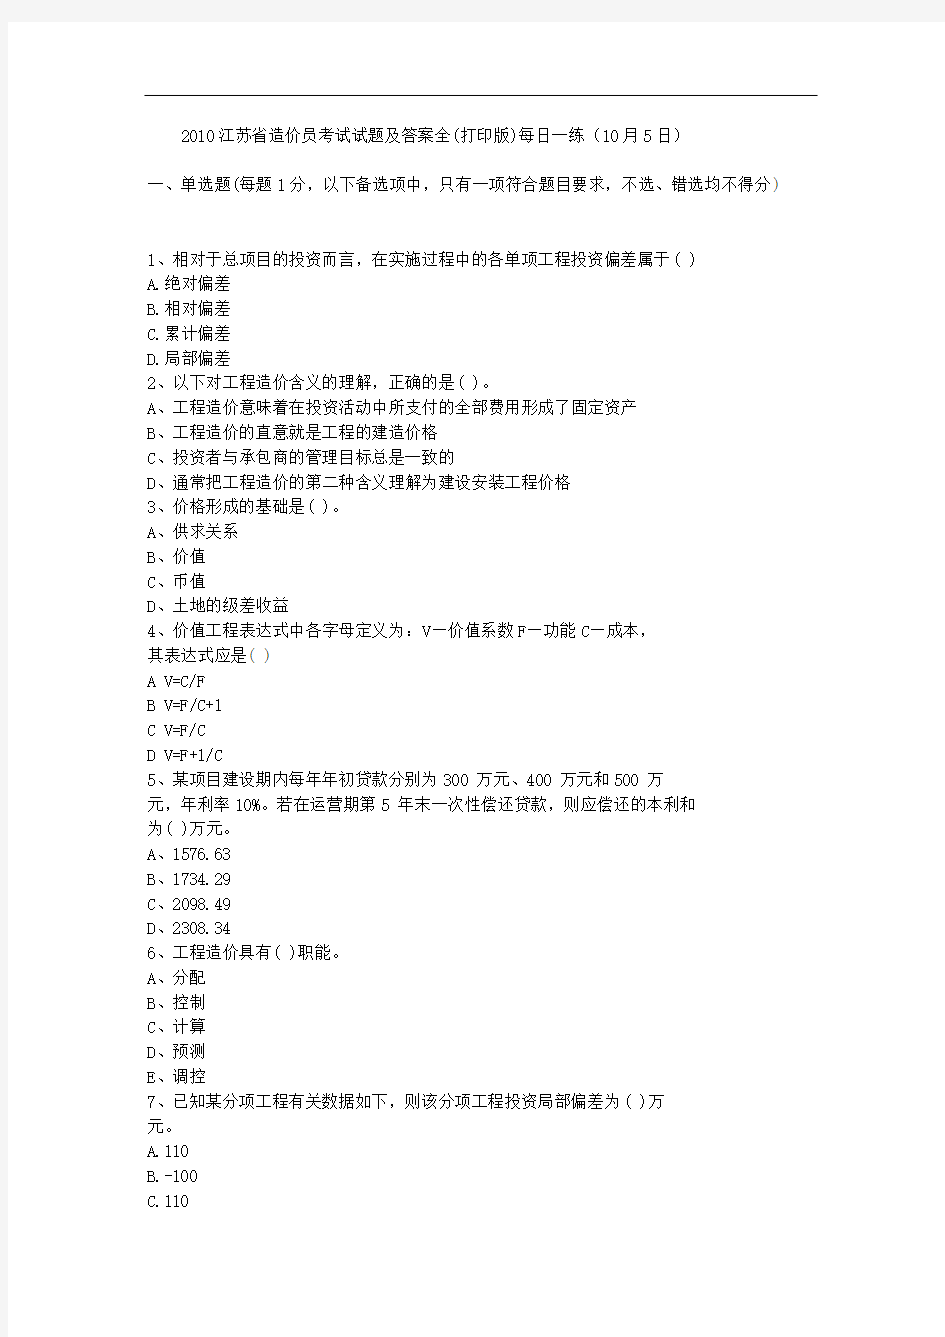 2010江苏省造价员考试试题及答案全(打印版)每日一练(10月5日)